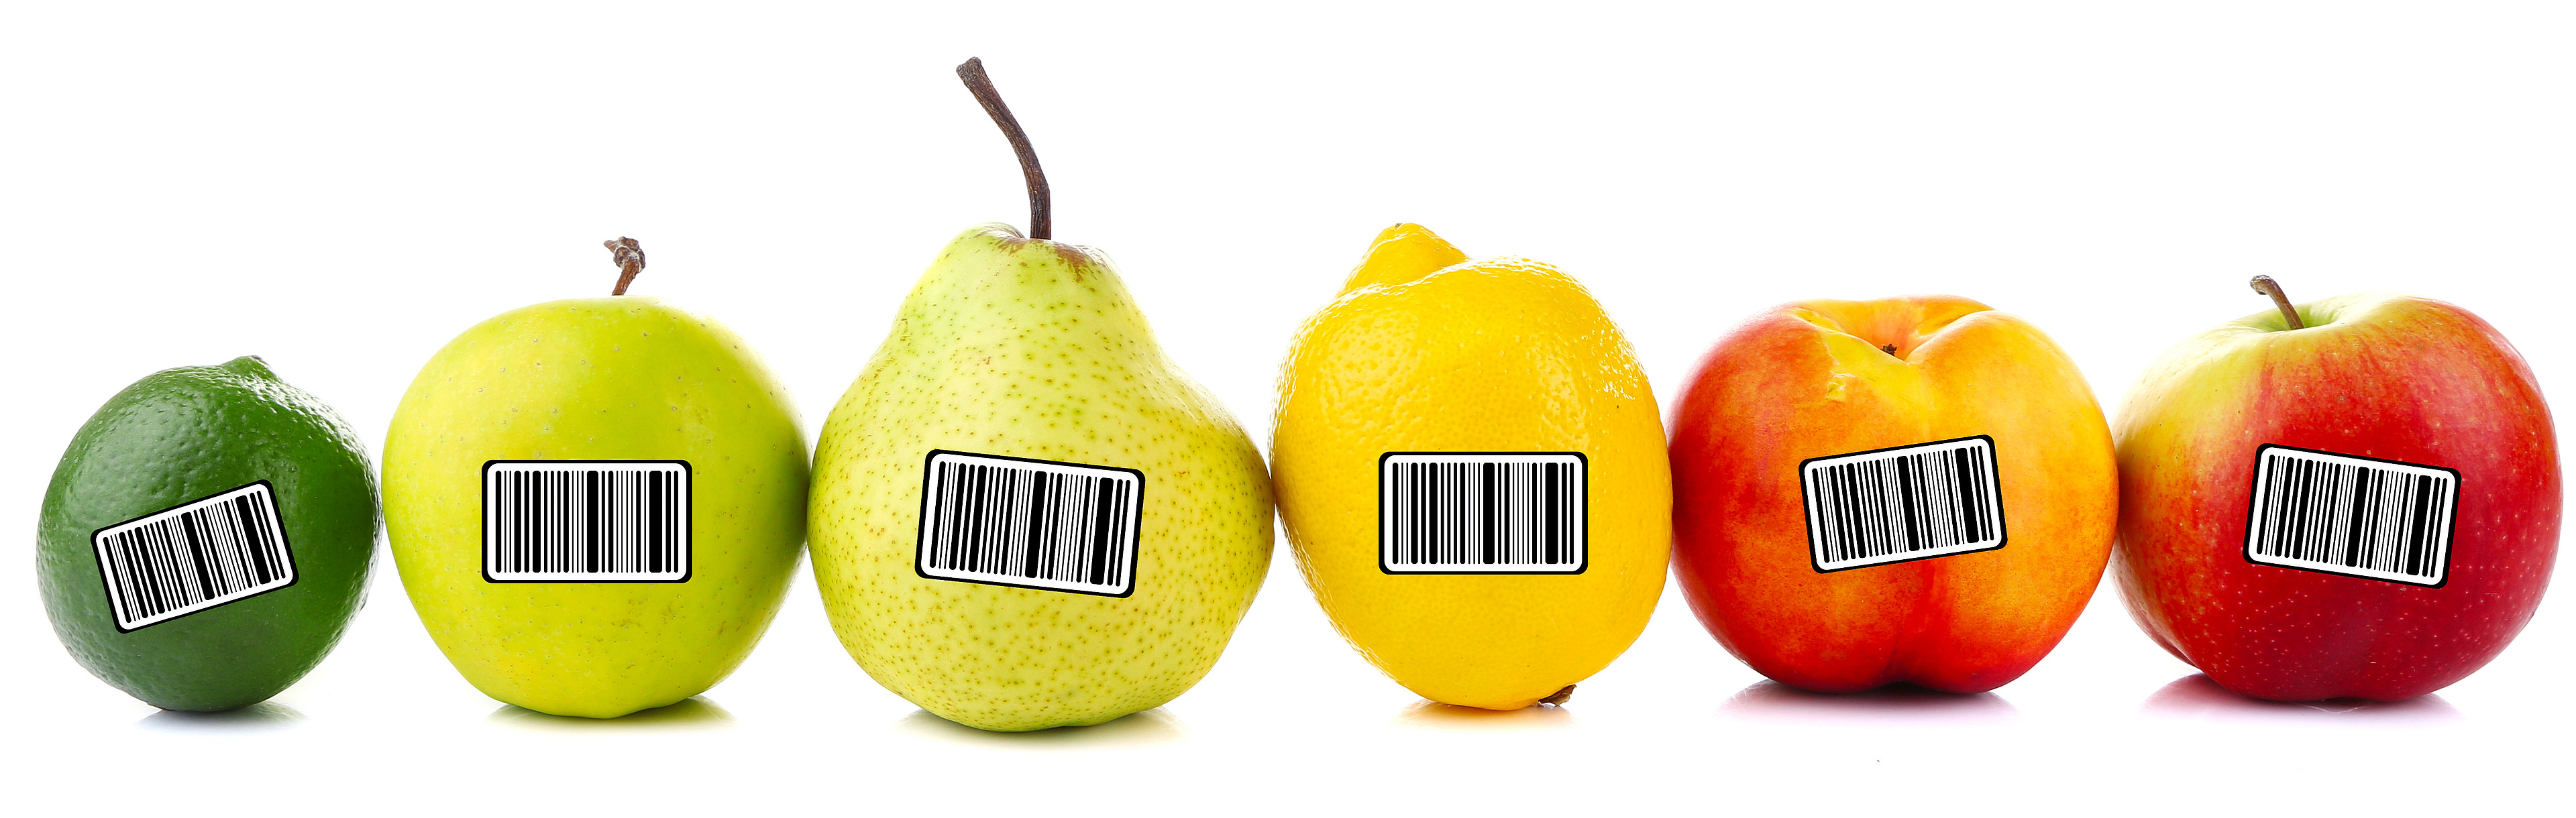 Das Bild zeigt eine Reihe mit unterschiedlichen Früchten, auf denen jeweils ein Sticker mit einem Barcode klebt.